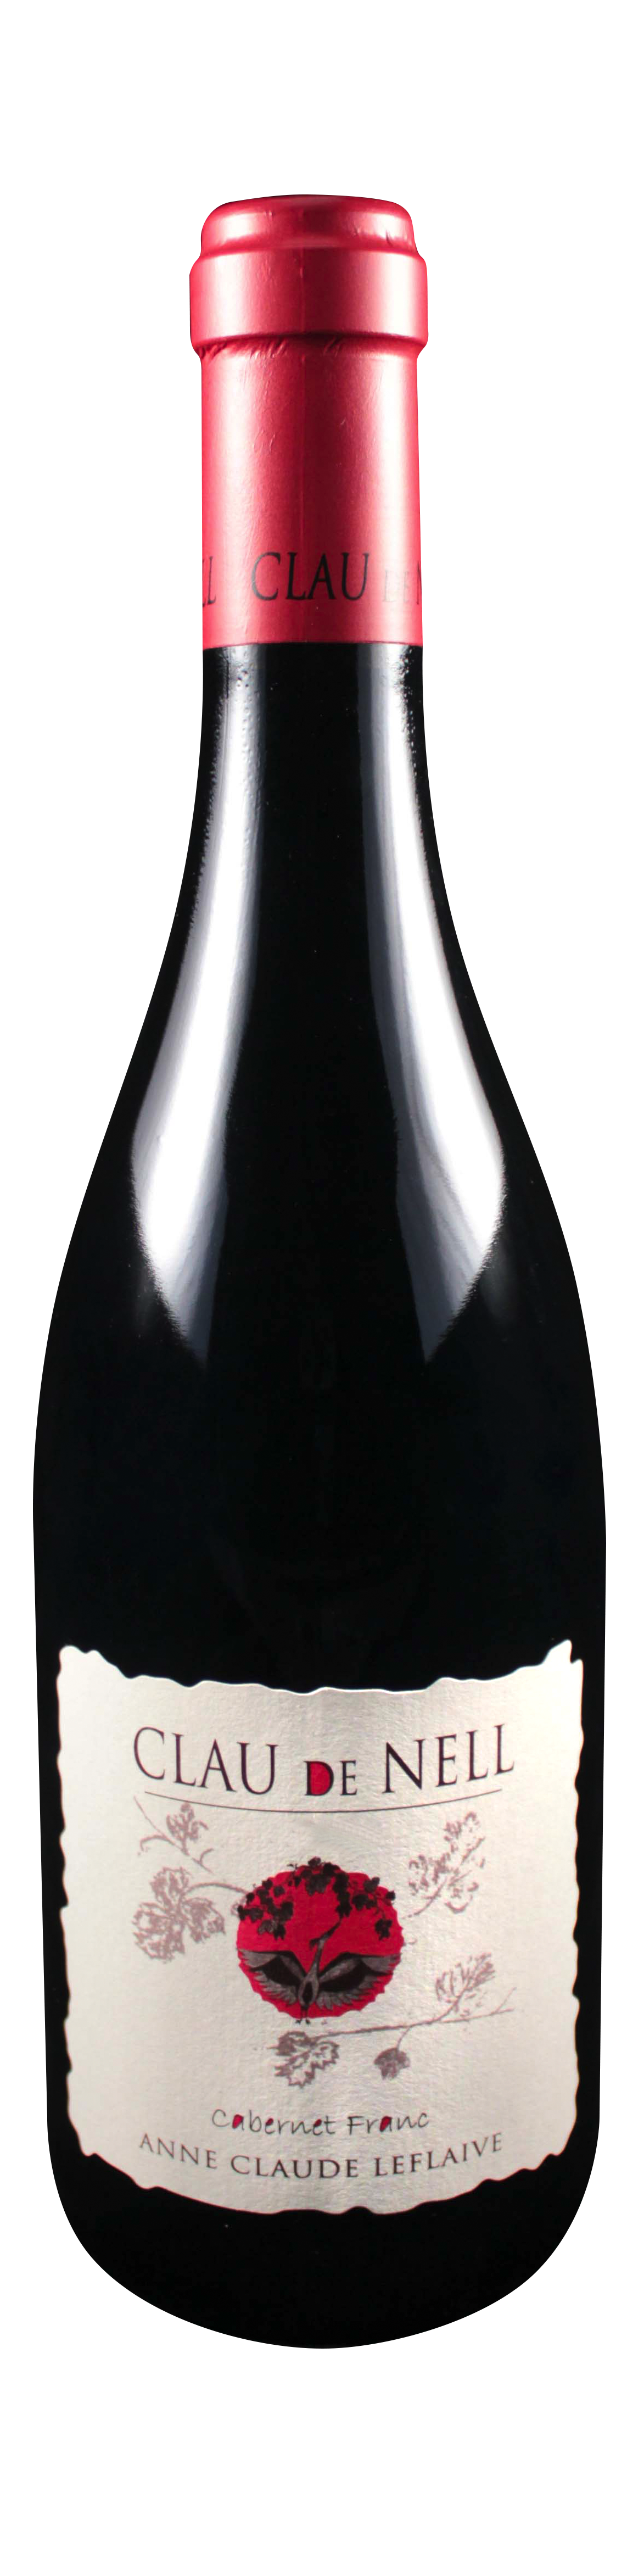 Bottle shot of 2009 Cabernet Franc